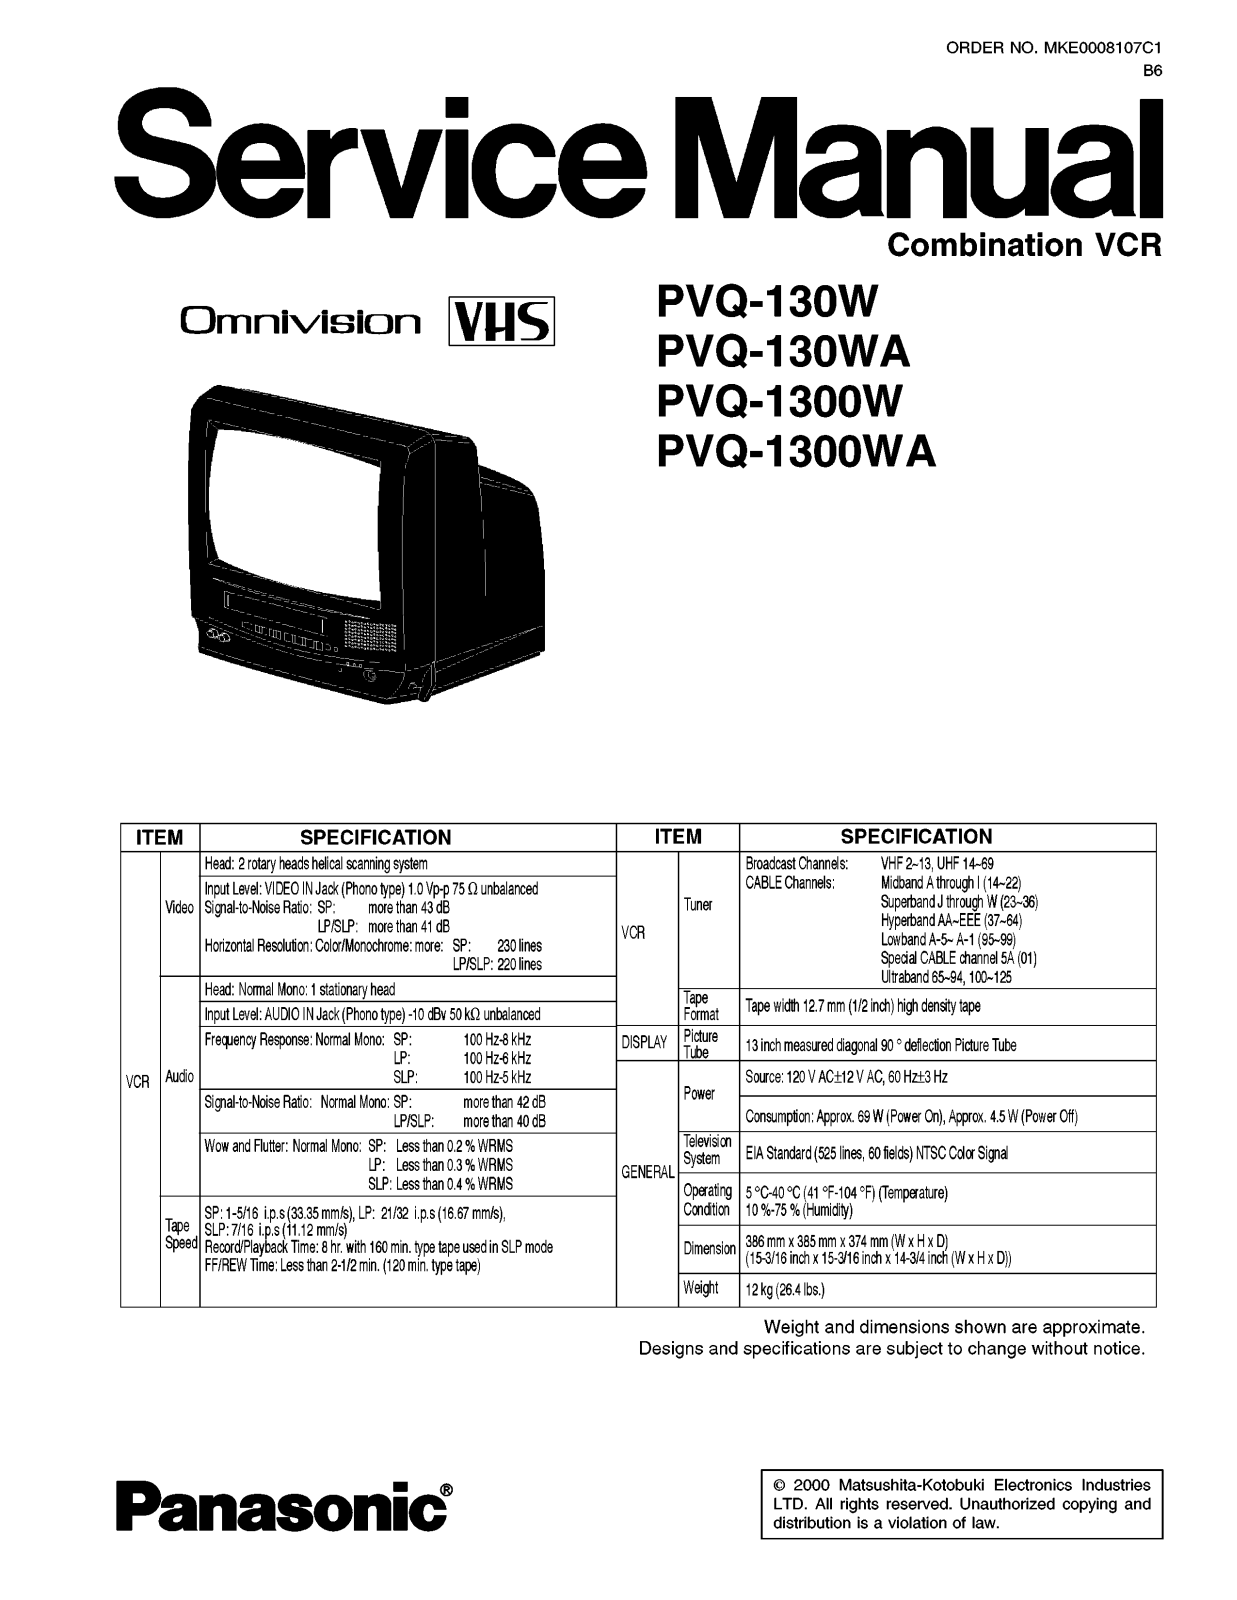 Panasonic PVQ-130W, PVQ-130WA, PVQ-1300W, PVQ-1300WA Service Manual